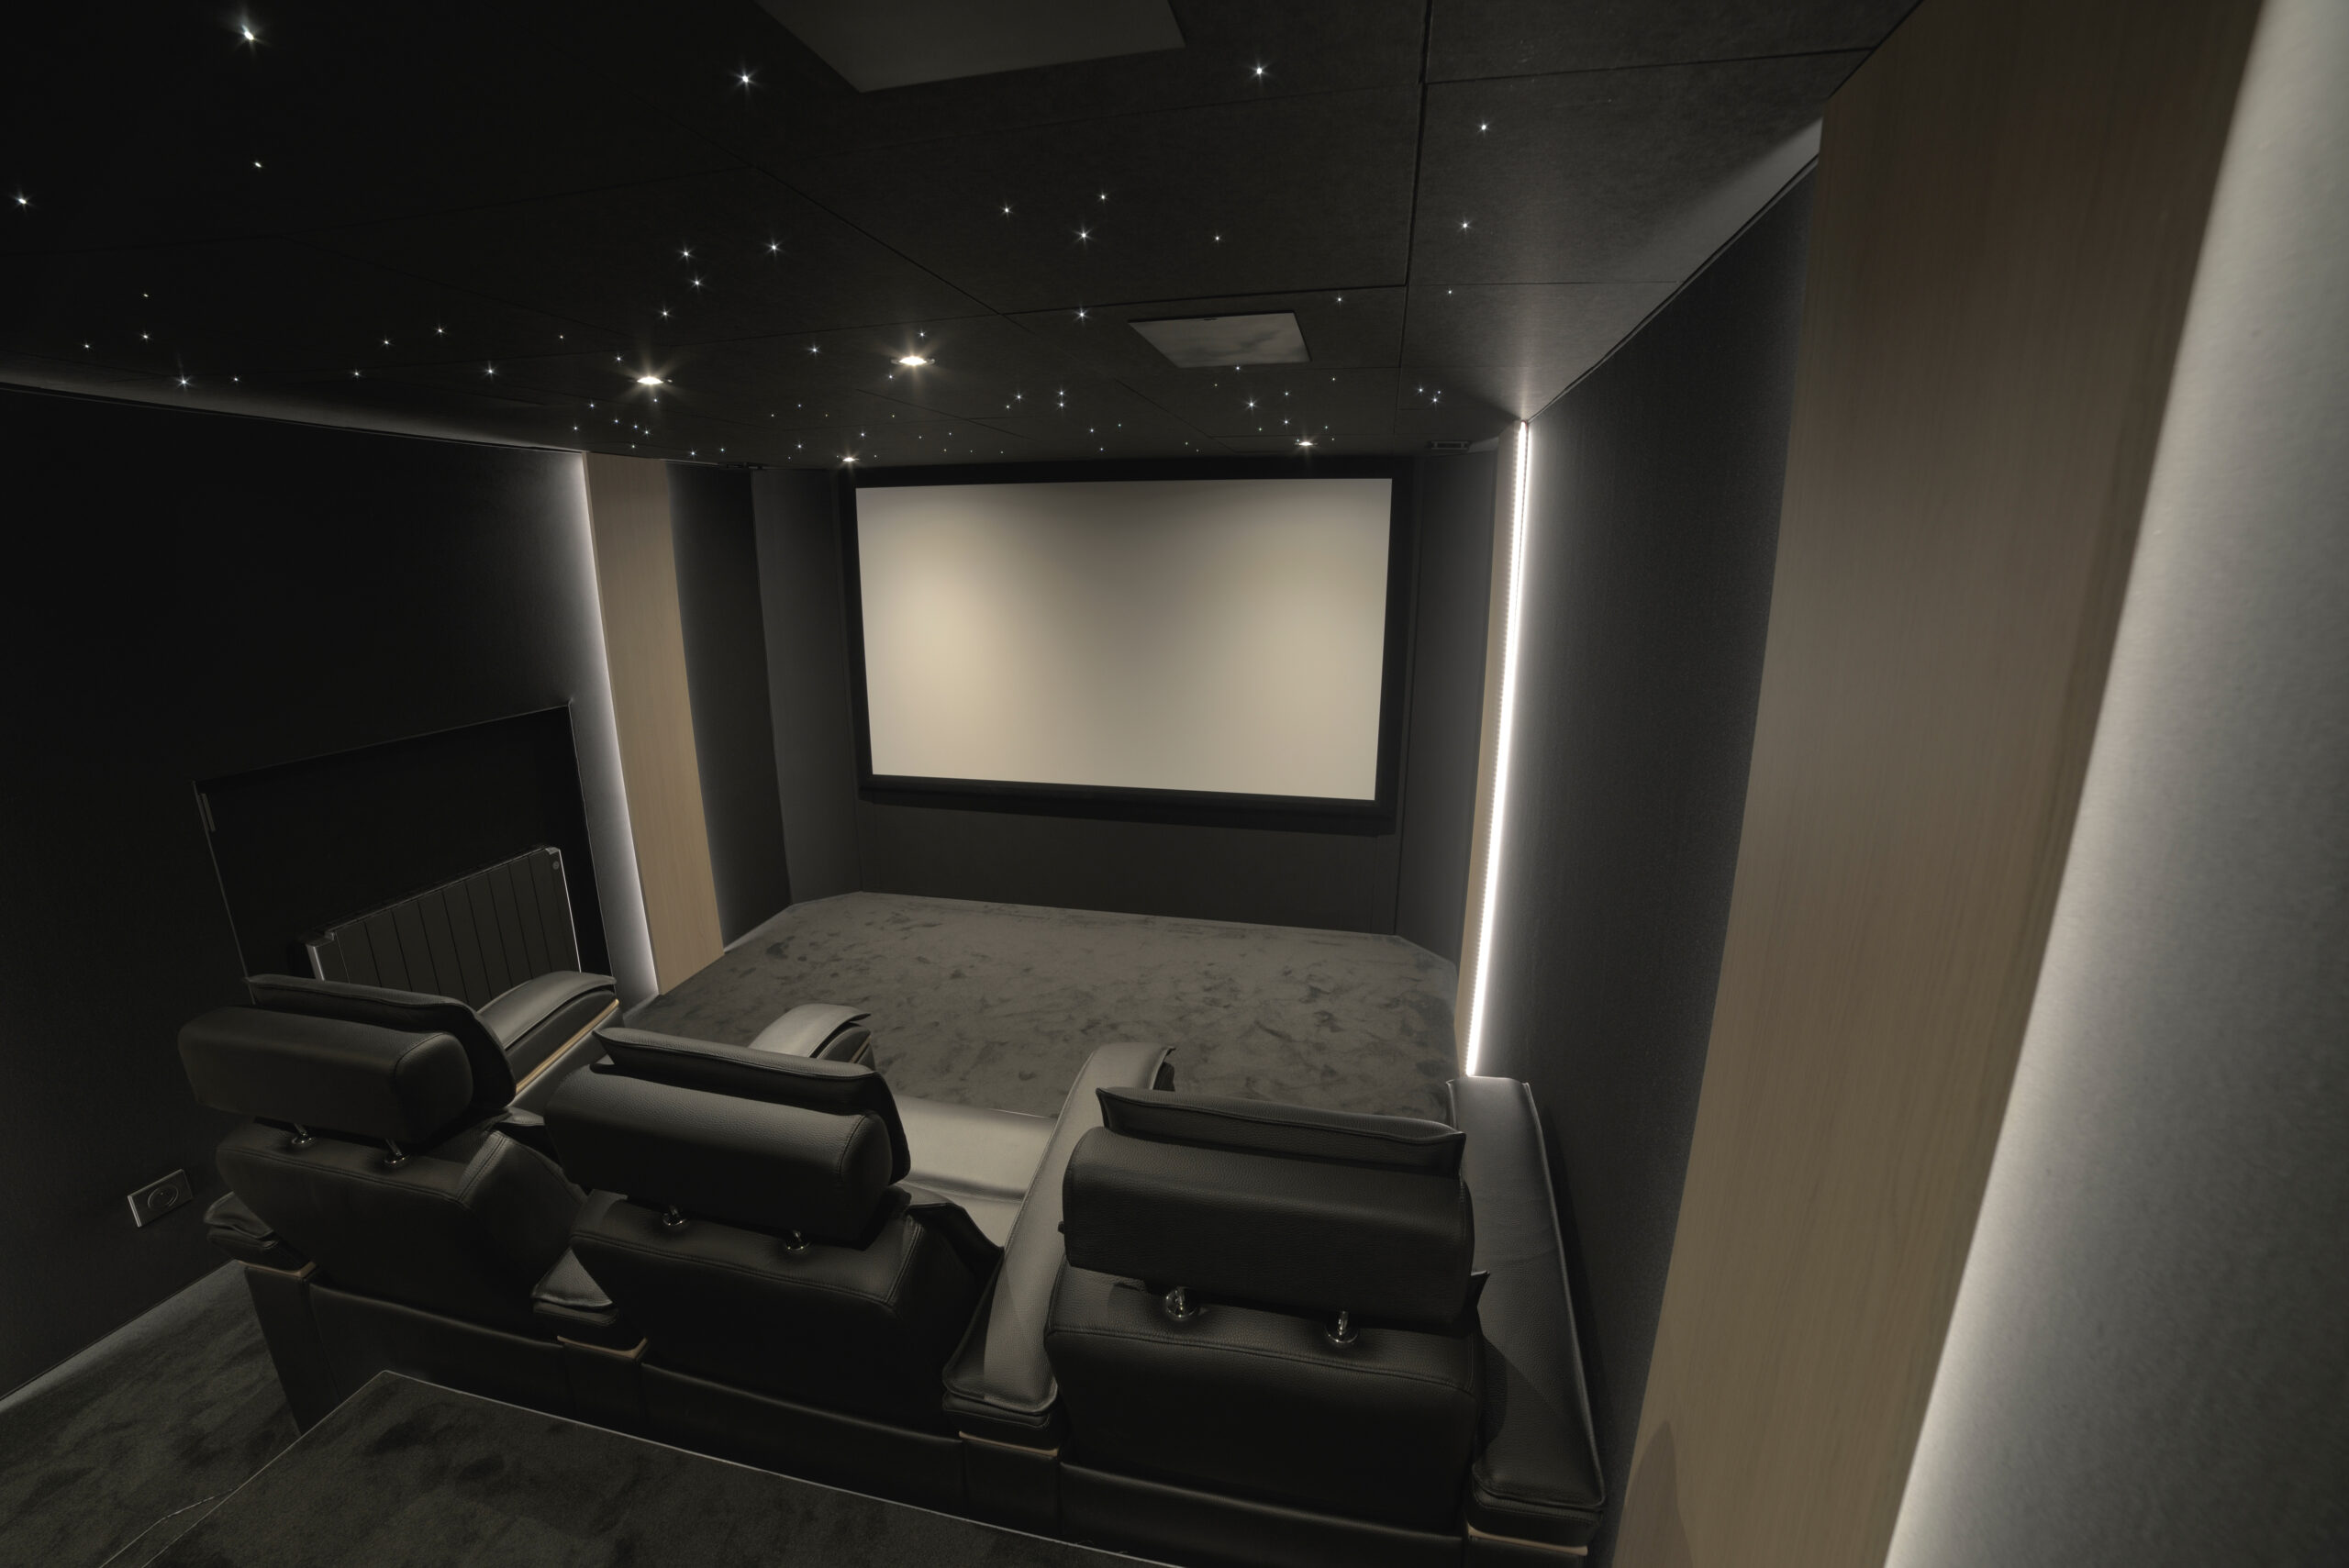 Salle de cinéma privée 17m2 avec 5 fauteuils en cuir noir, ciel étoilé, spots, panneaux décor chêne rétro-éclairés à Créteil